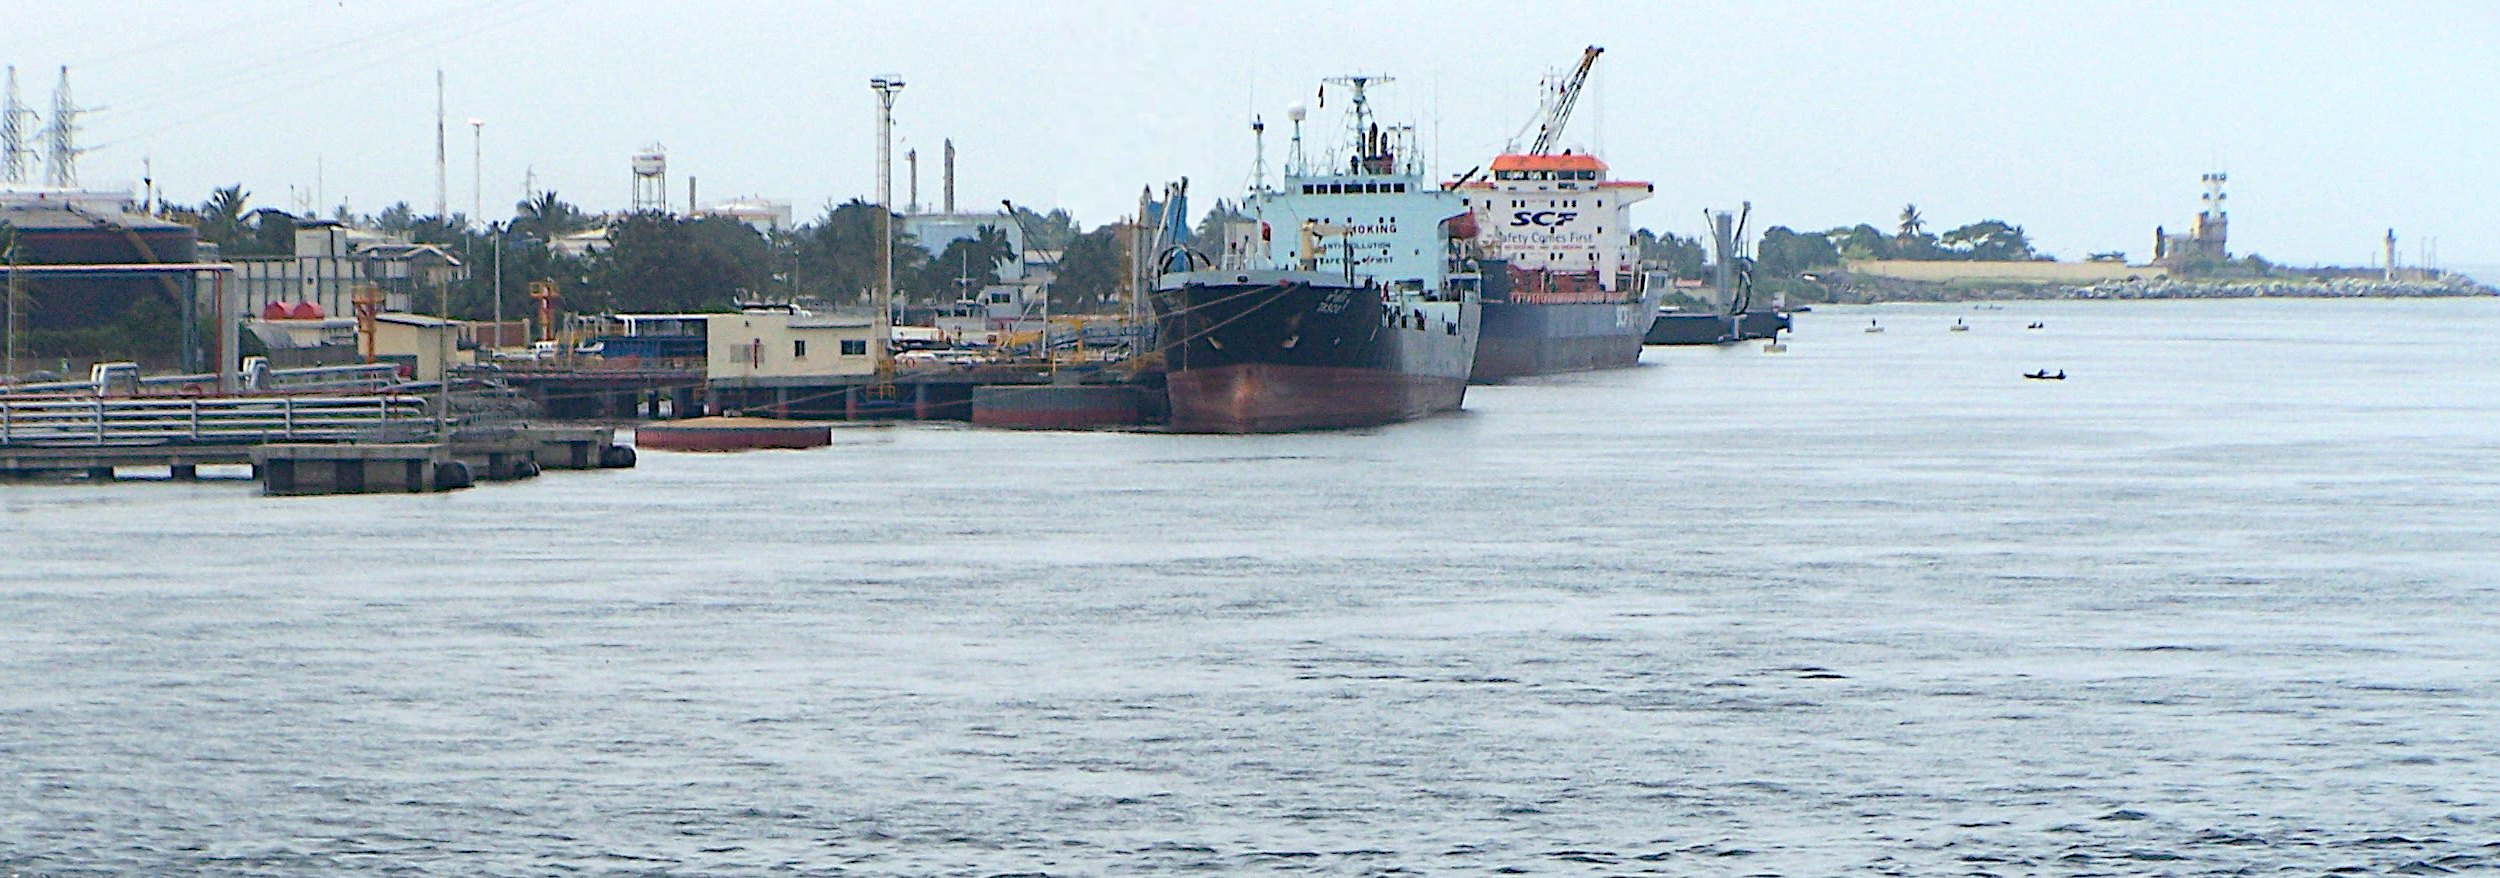 View of Abidjan Port